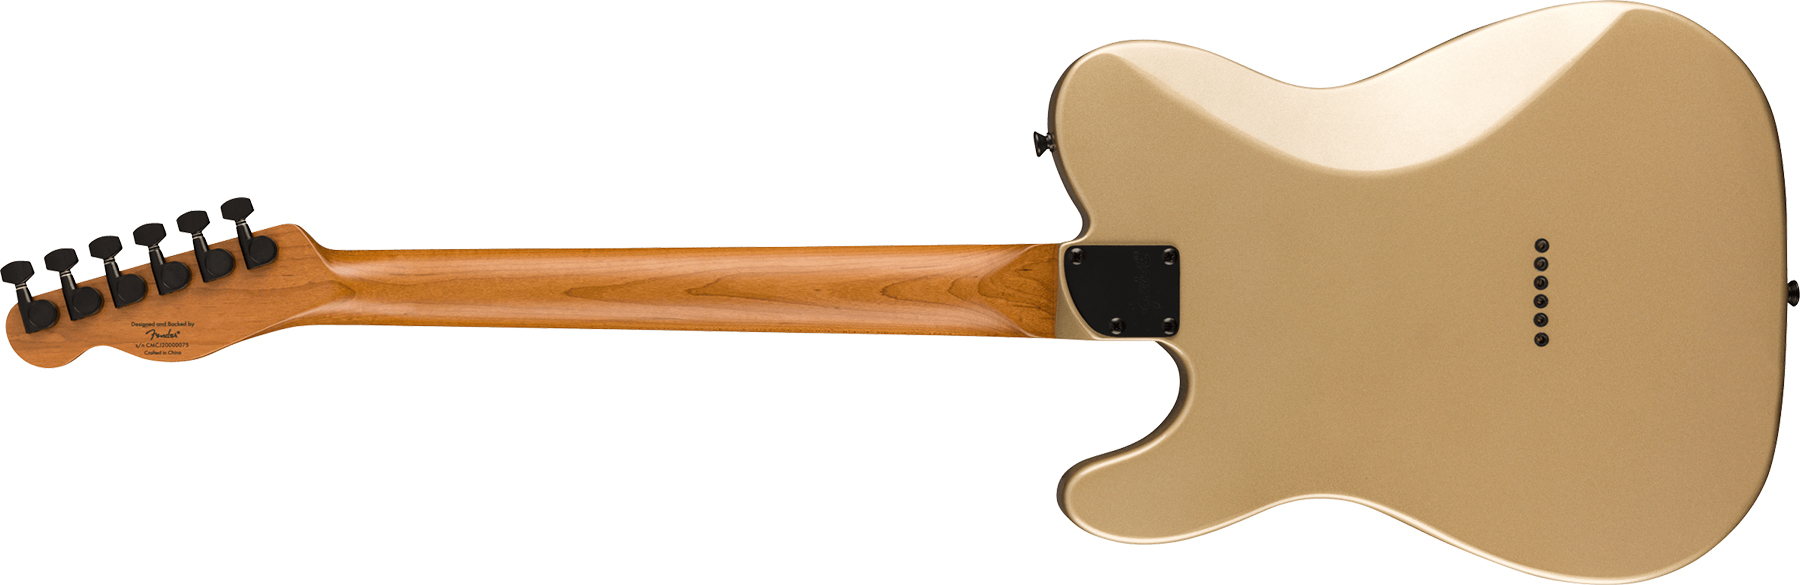 Squier Tele Contemporary Rh Hh Ht Mn - Shoreline Gold - Guitarra eléctrica con forma de tel - Variation 1